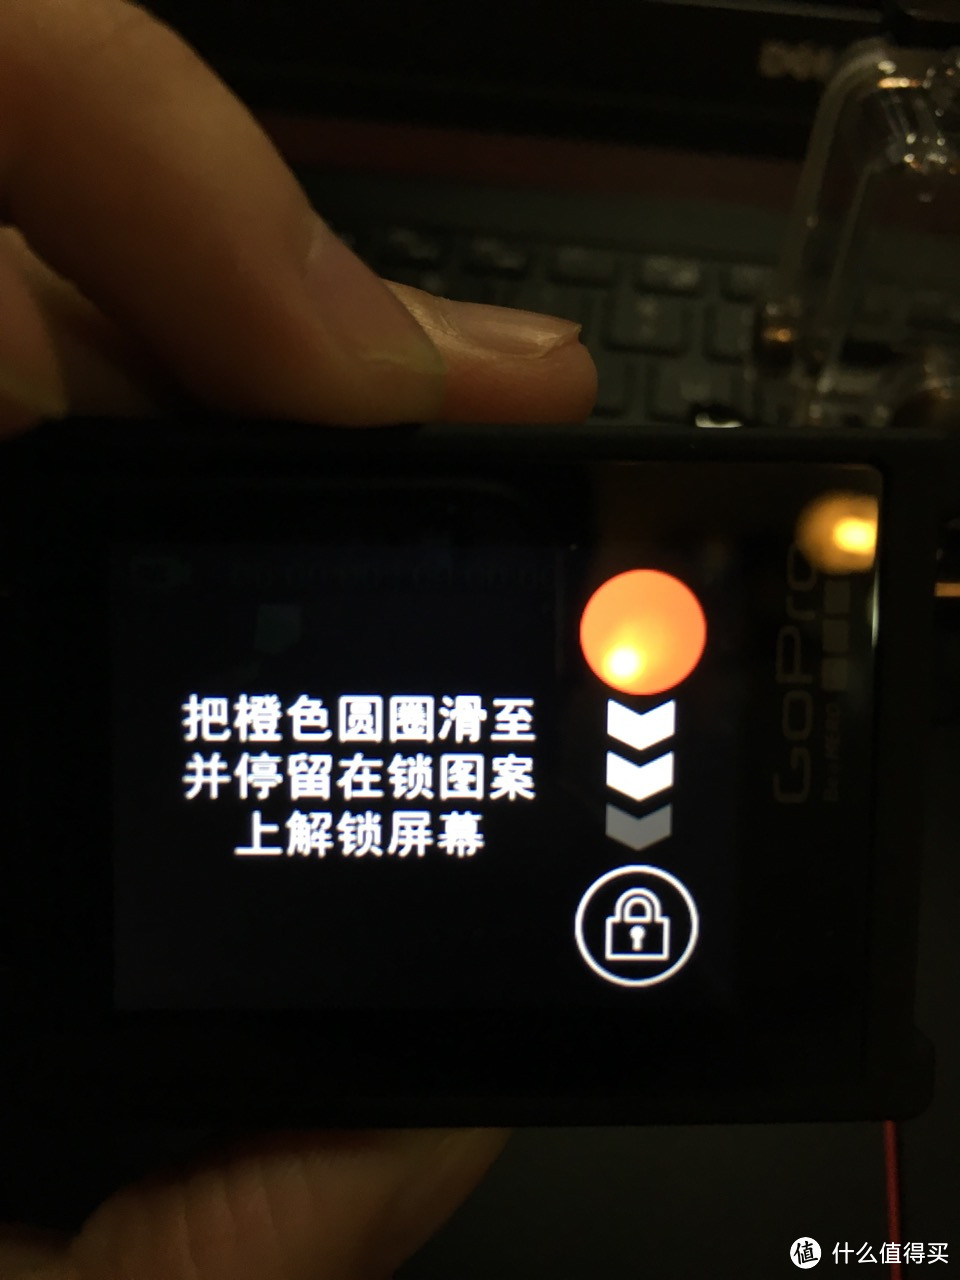 新年新气象——GoPro Hero4 Silver 运动相机 开箱评测